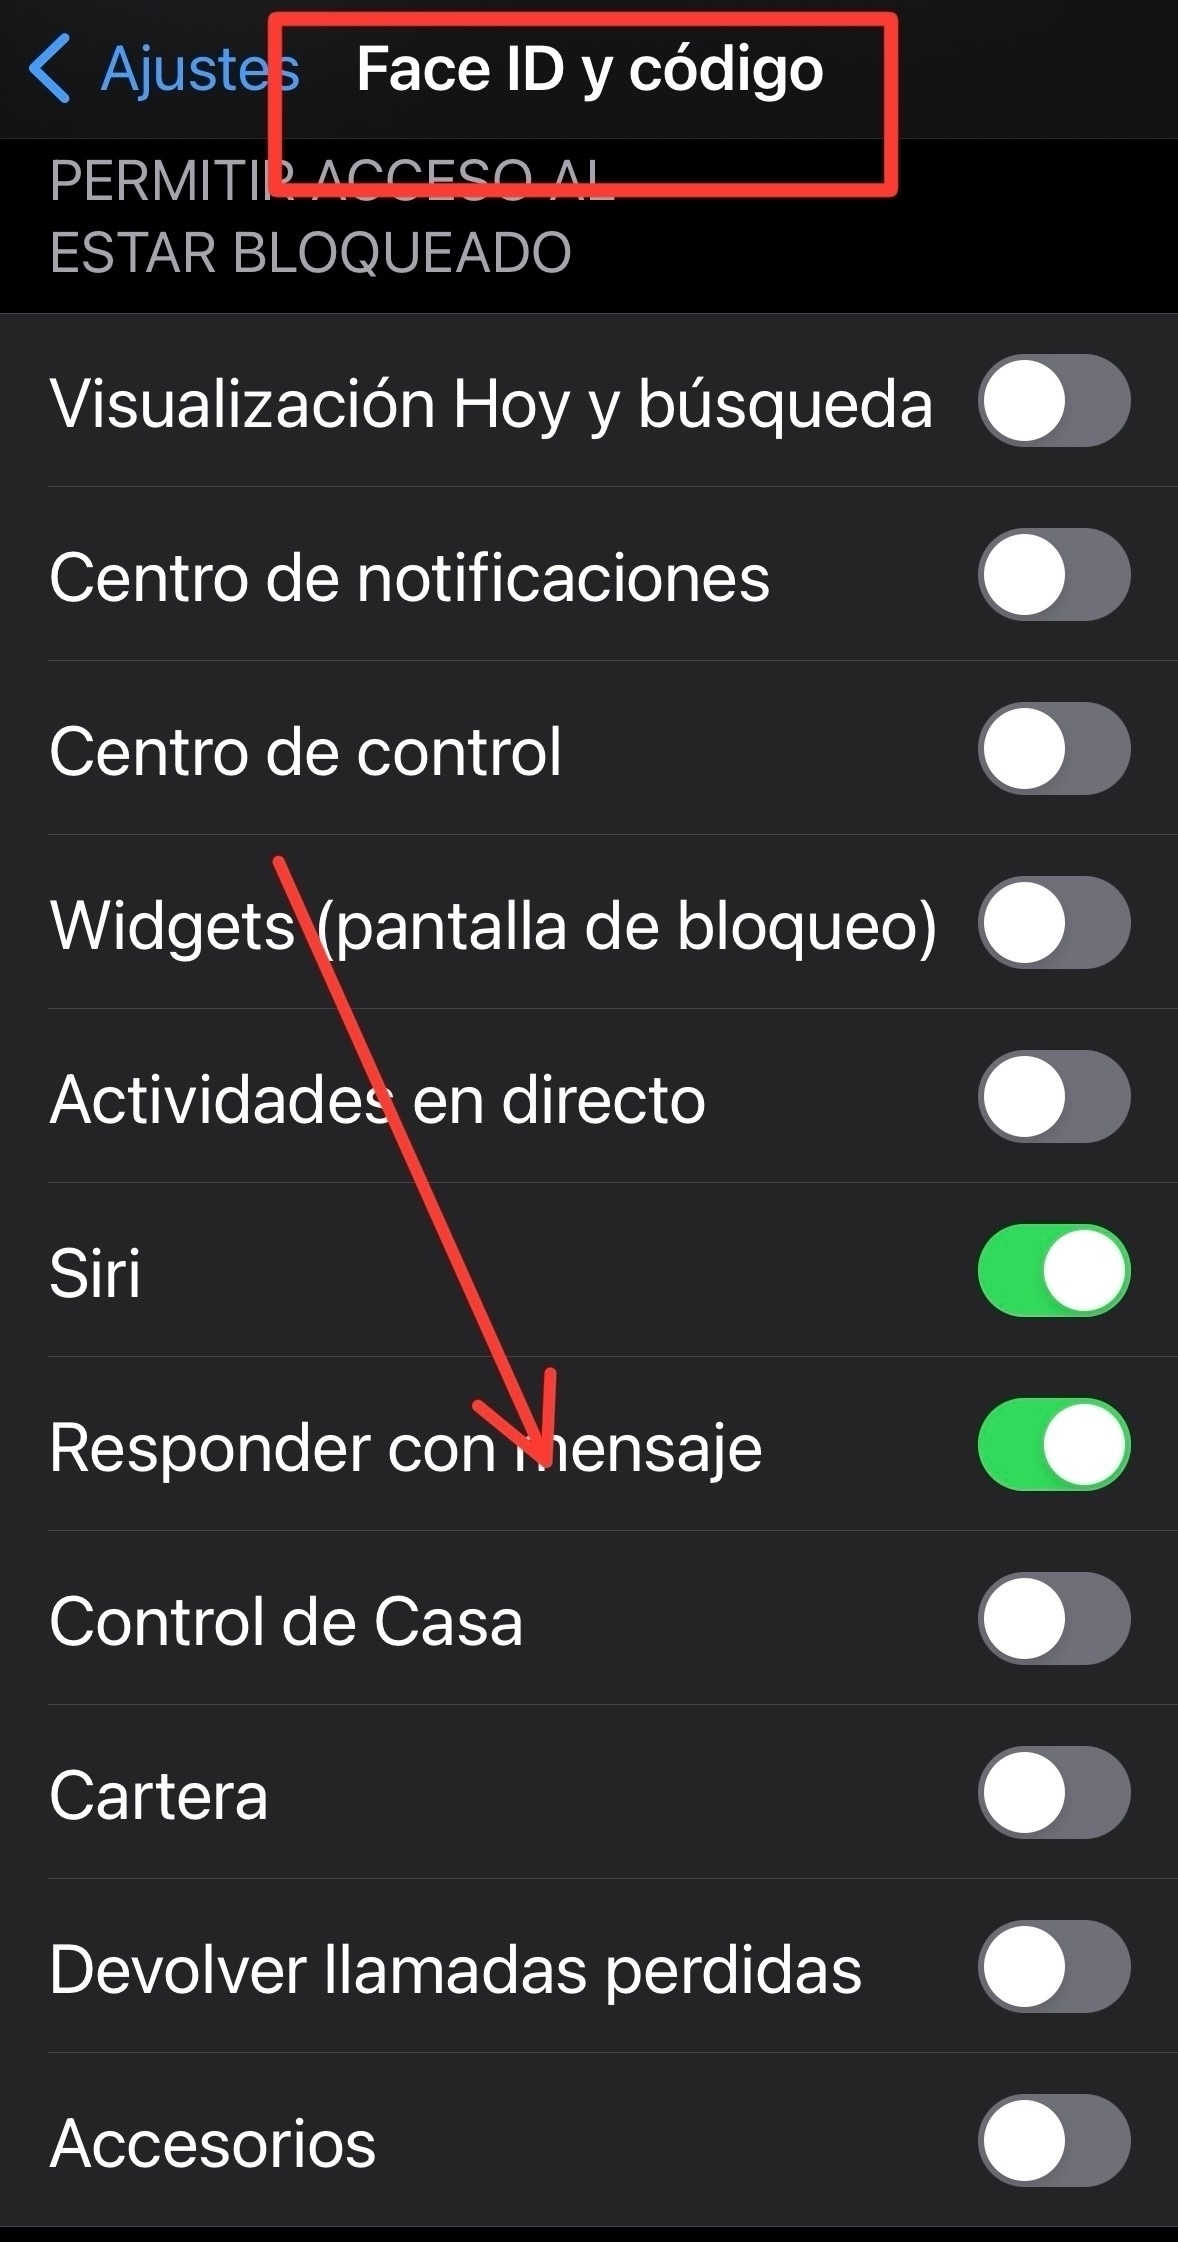 Flecha señalando dónde hay que habilitar la opción de responder con mensaje, dentro de Face ID y Código de los Ajustes del iPhone